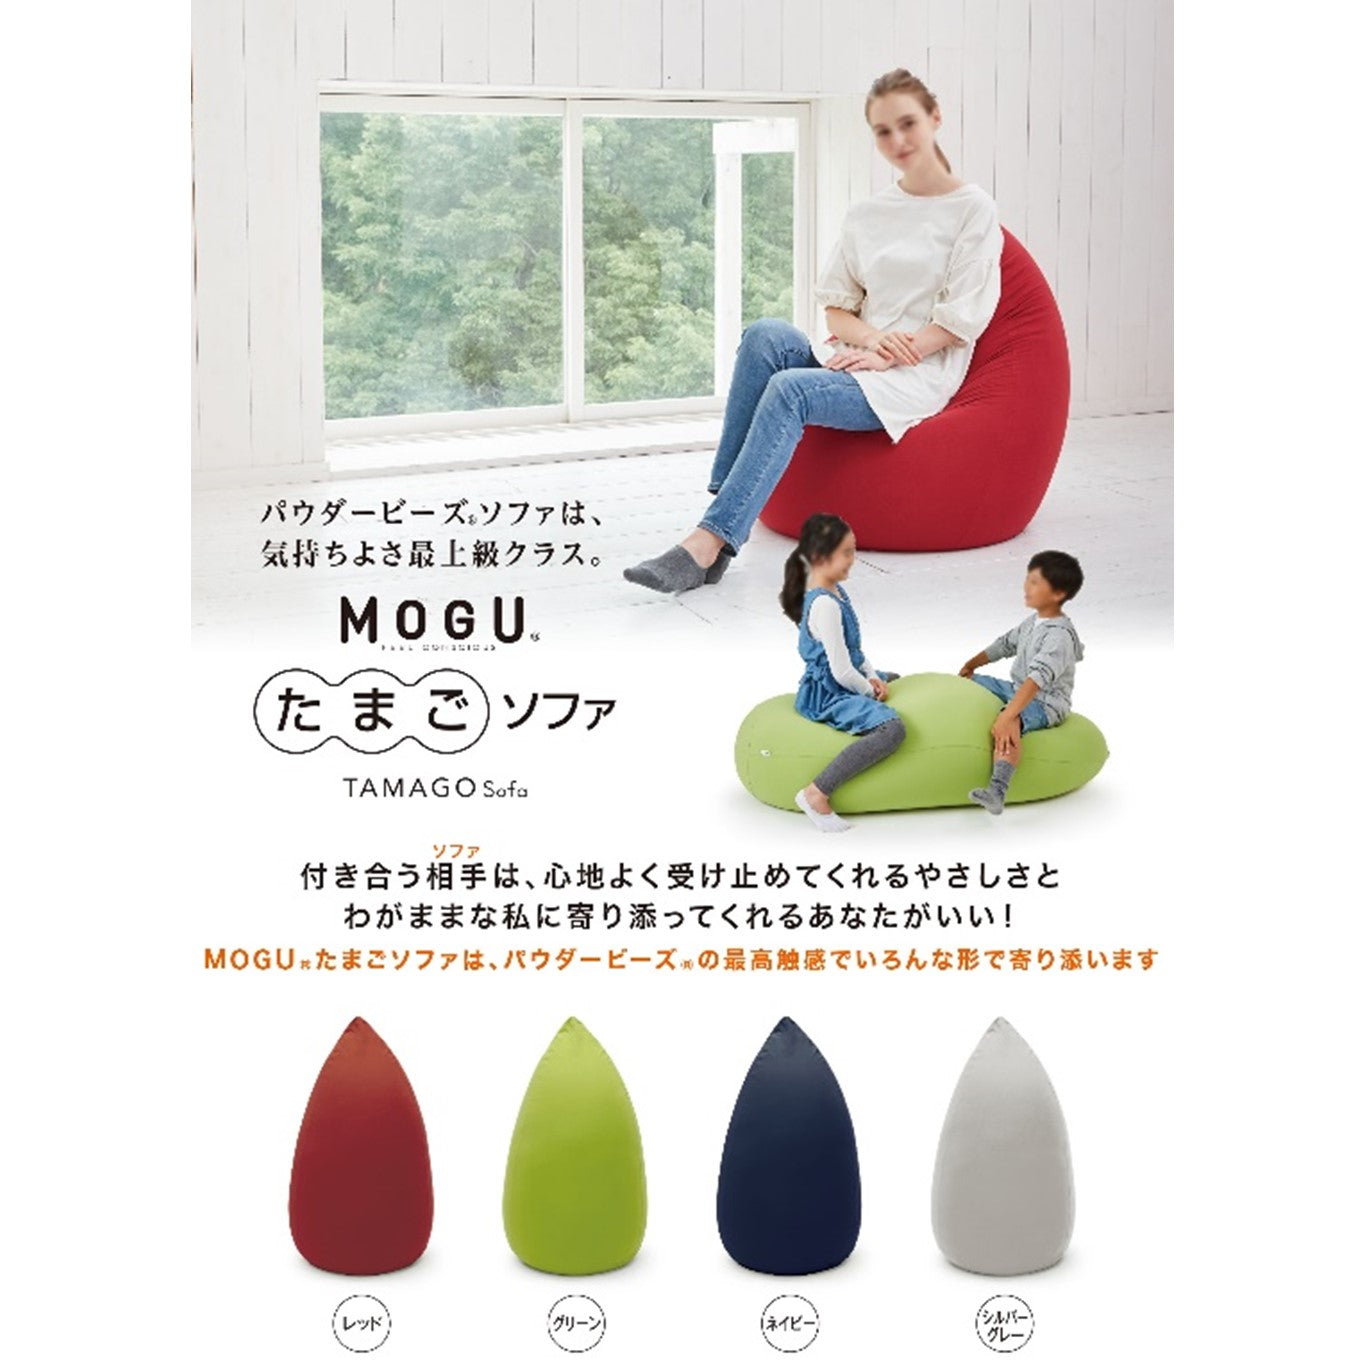 蔵 MOGU モグ ソファ ビーズクッション たまごソファ 本体 専用カバー セット set 日本製 正規品